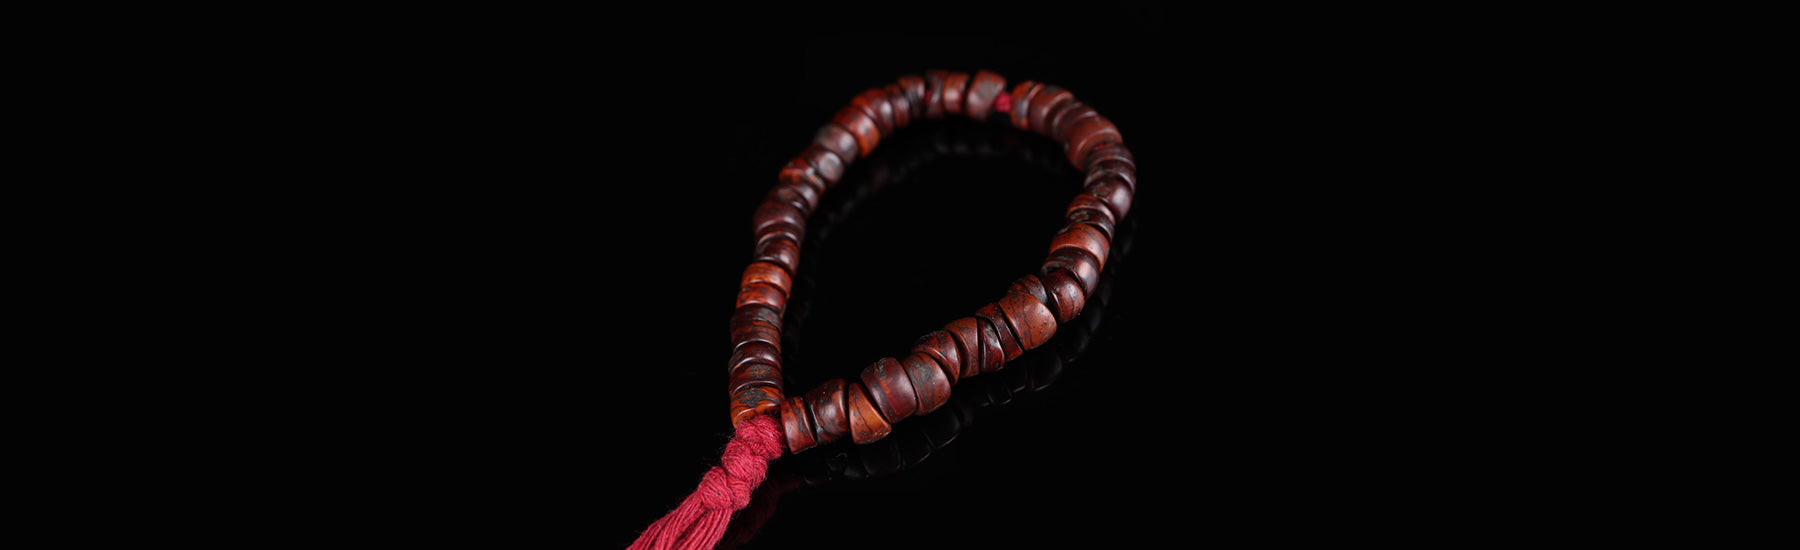 Tibetan Wrist Malas - mantrapiece.com